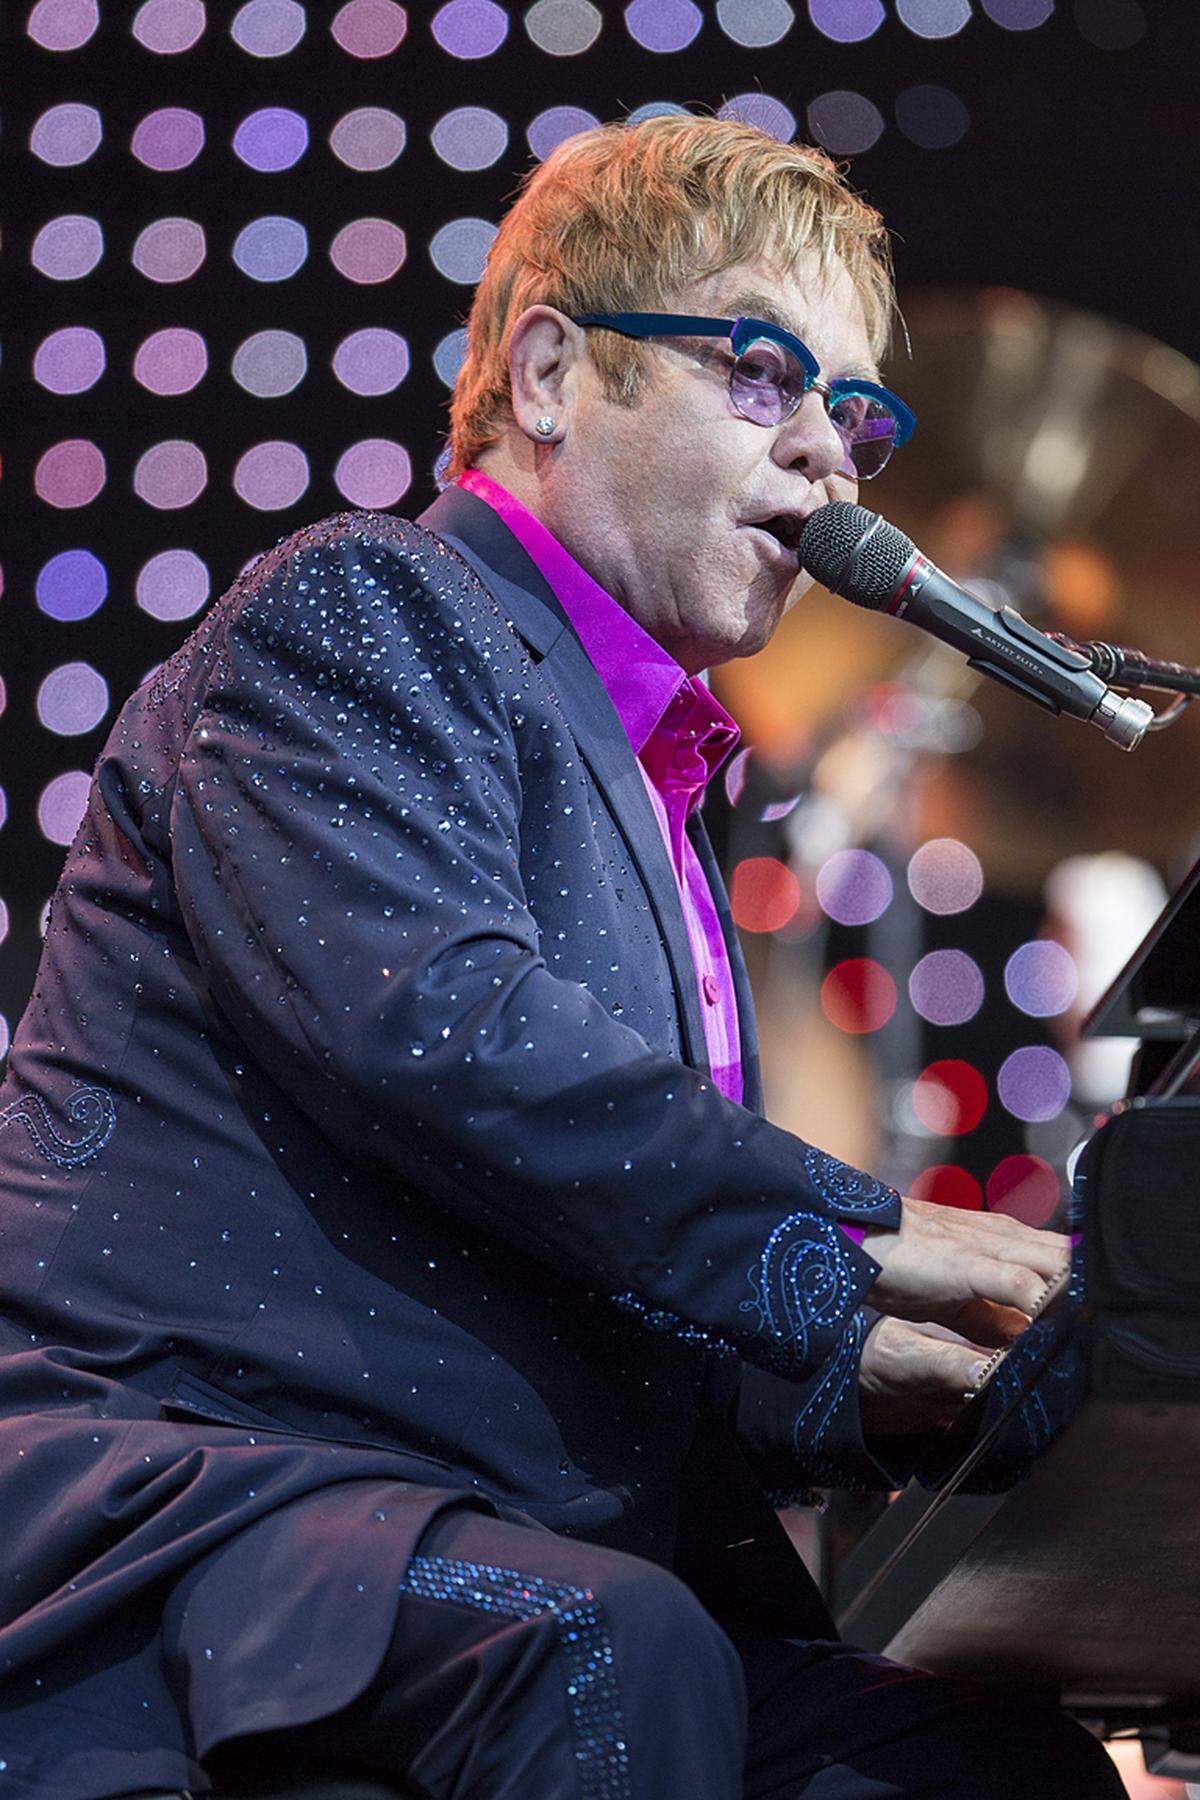 Sänger Elton John, dessen Leben verfilmt werden soll, verdiente im vergangenen Jahr 40 Millionen Euro.